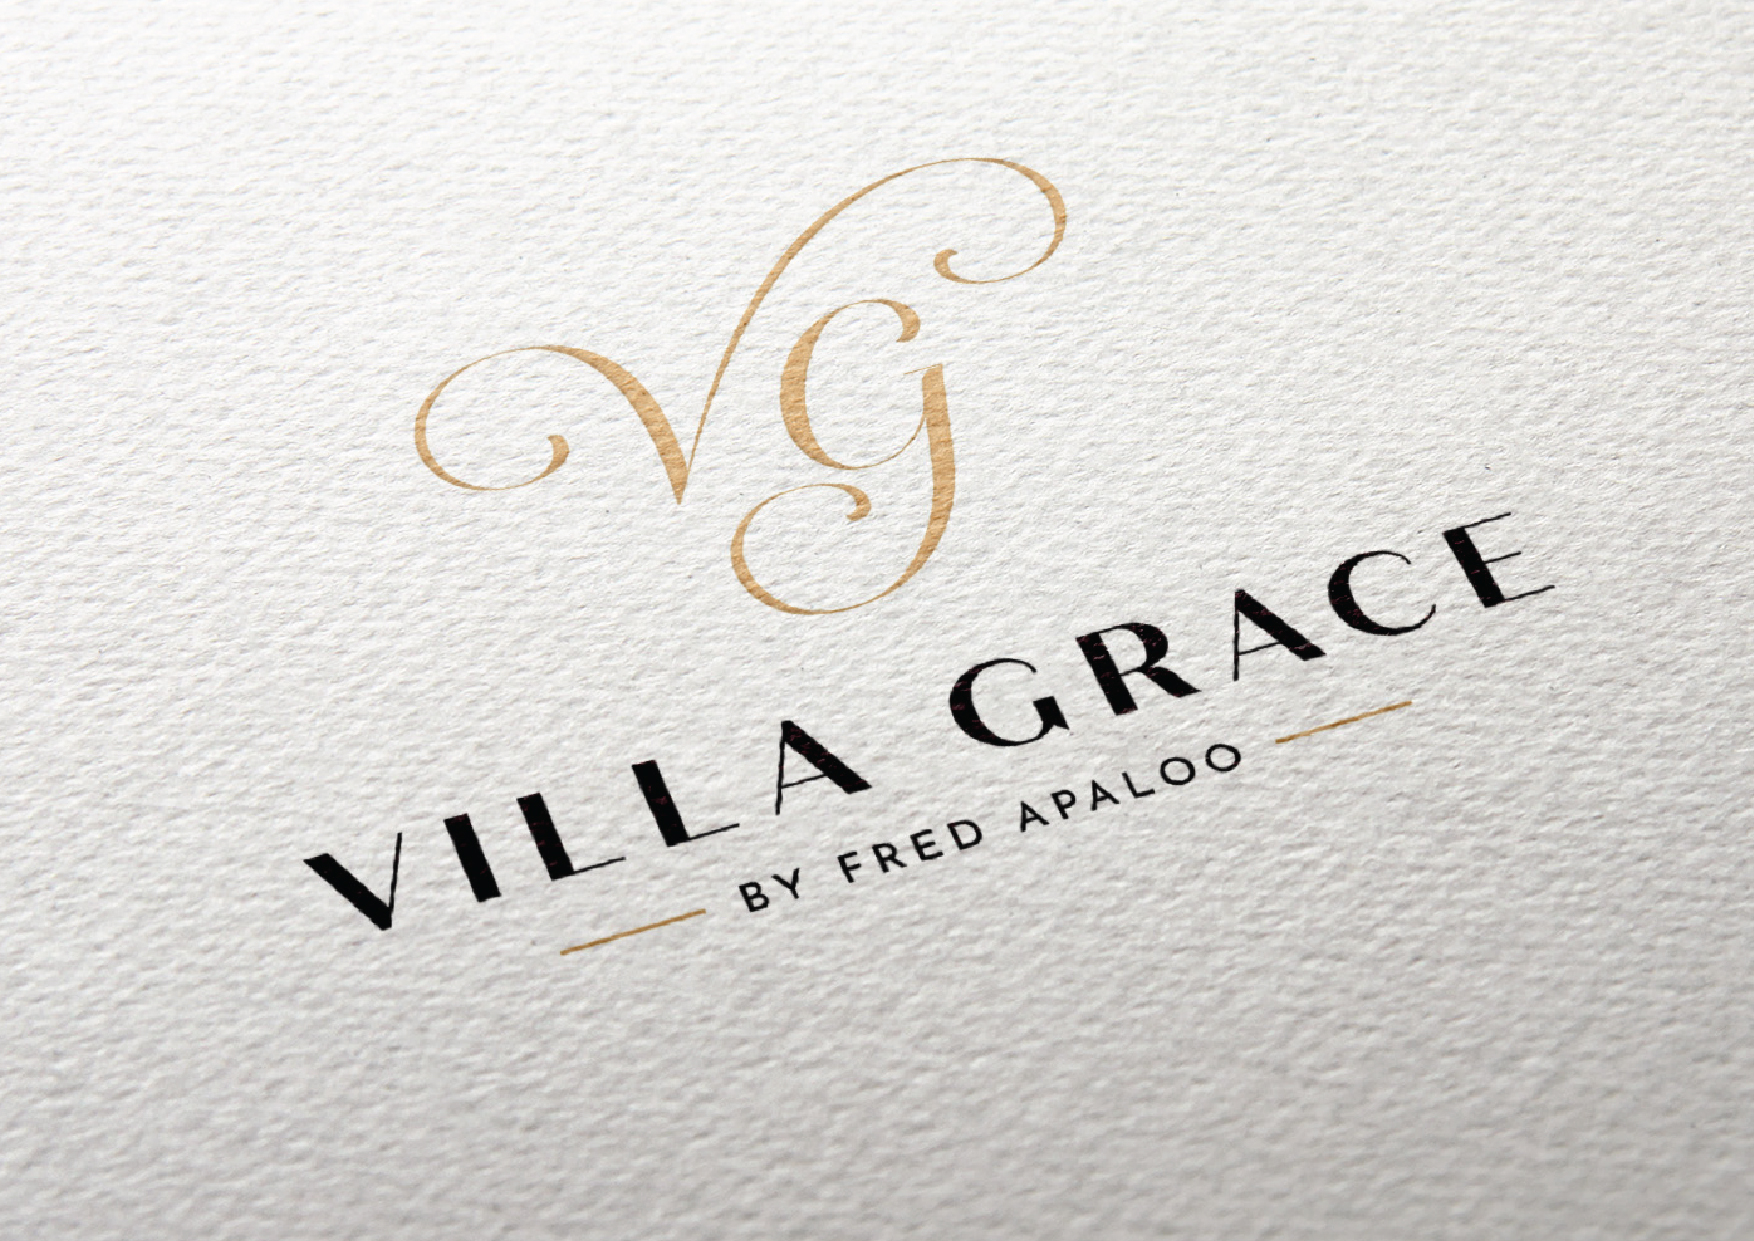 villagrace-branding-1-07